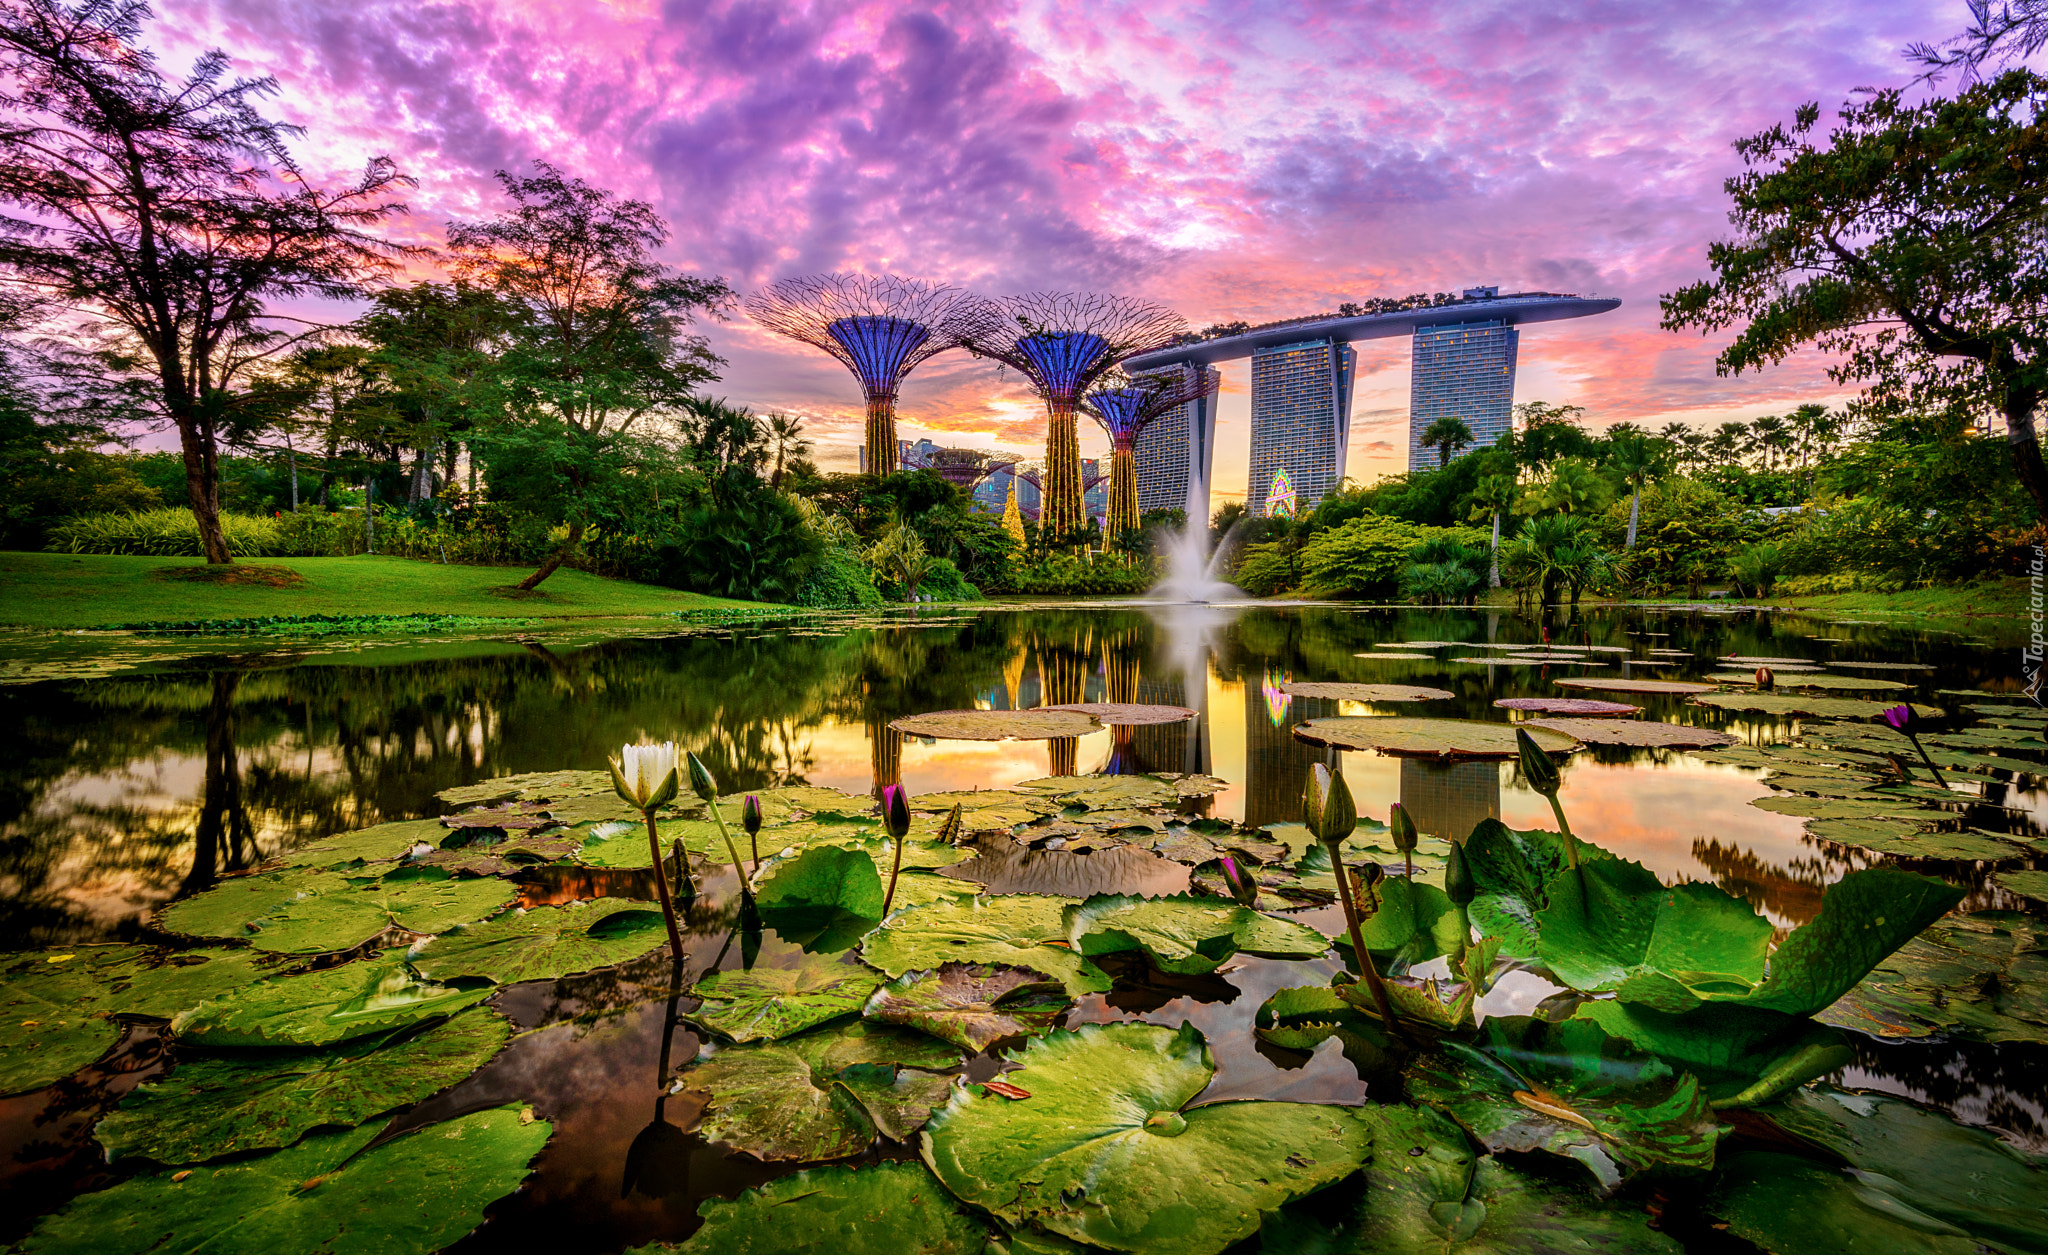 Staw, Lilie wodne, Hotel Marina Bay Sands, Futurystyczny ogród Gardens by the Bay, Singapur